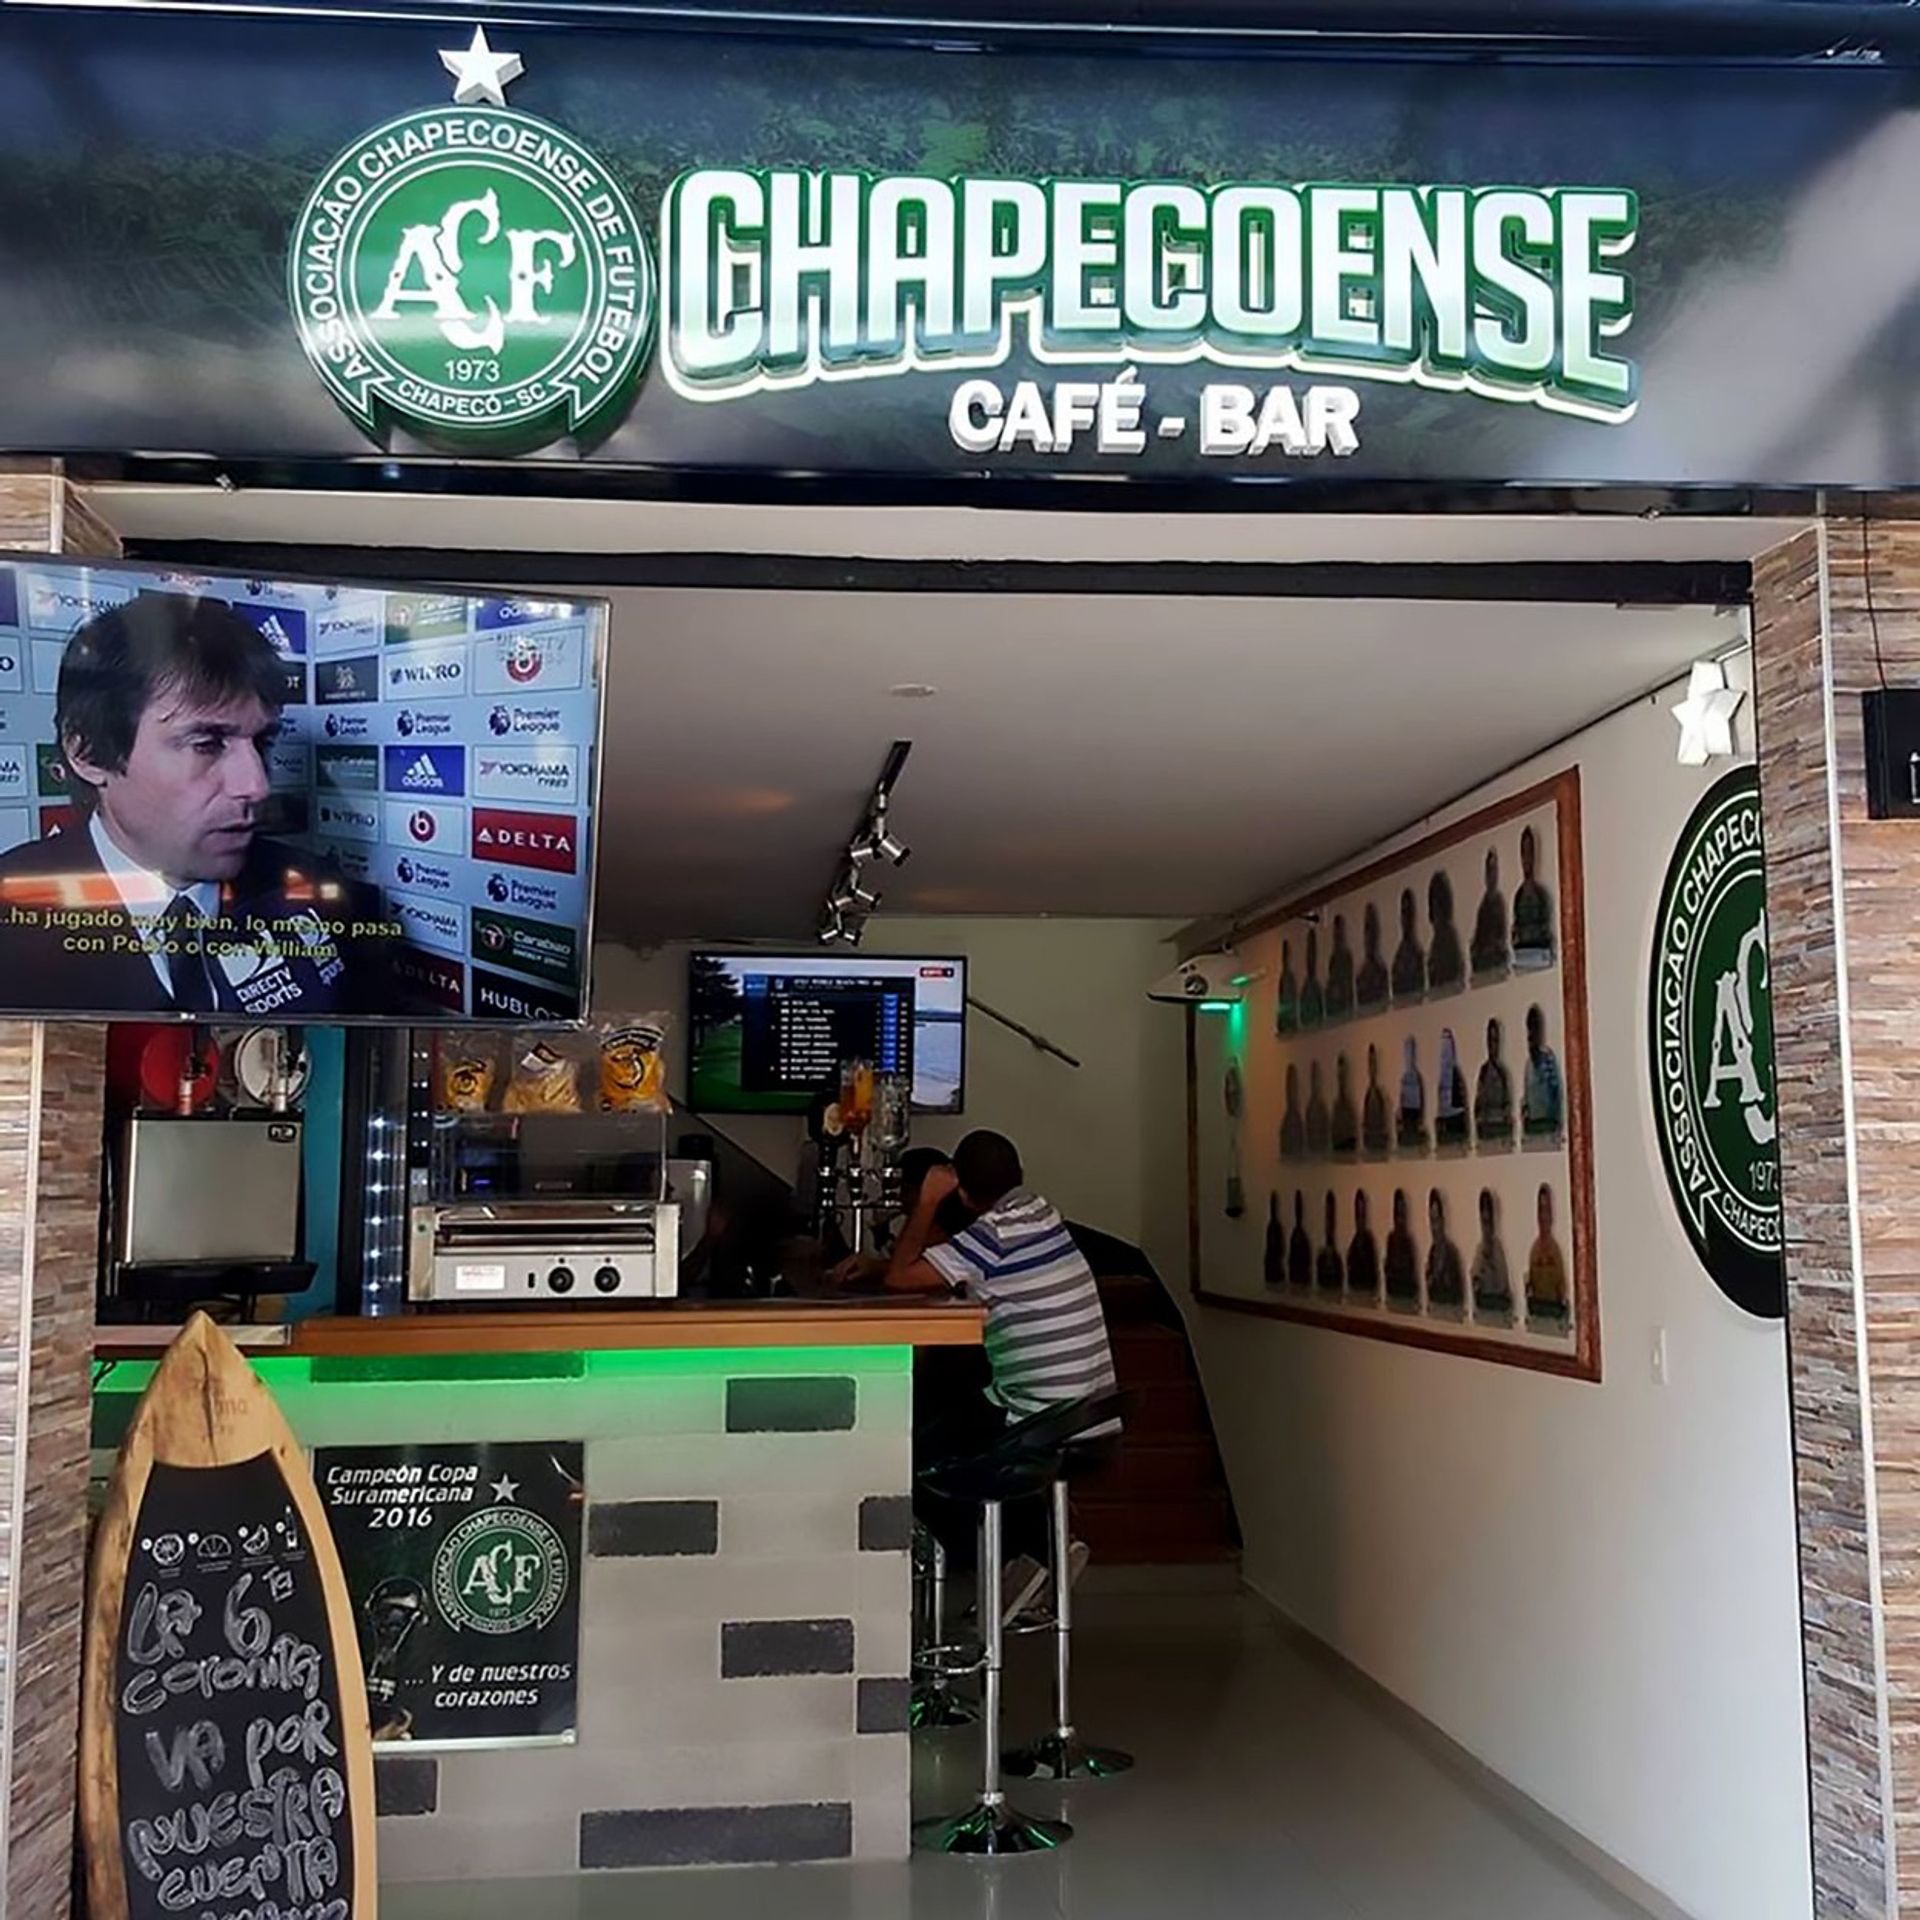 Vstup do kavárny Chapeco - GALERIE: Morbidní kavárna nebo dobrý nápad? Takhle uctili Chapecoense! (3/6)